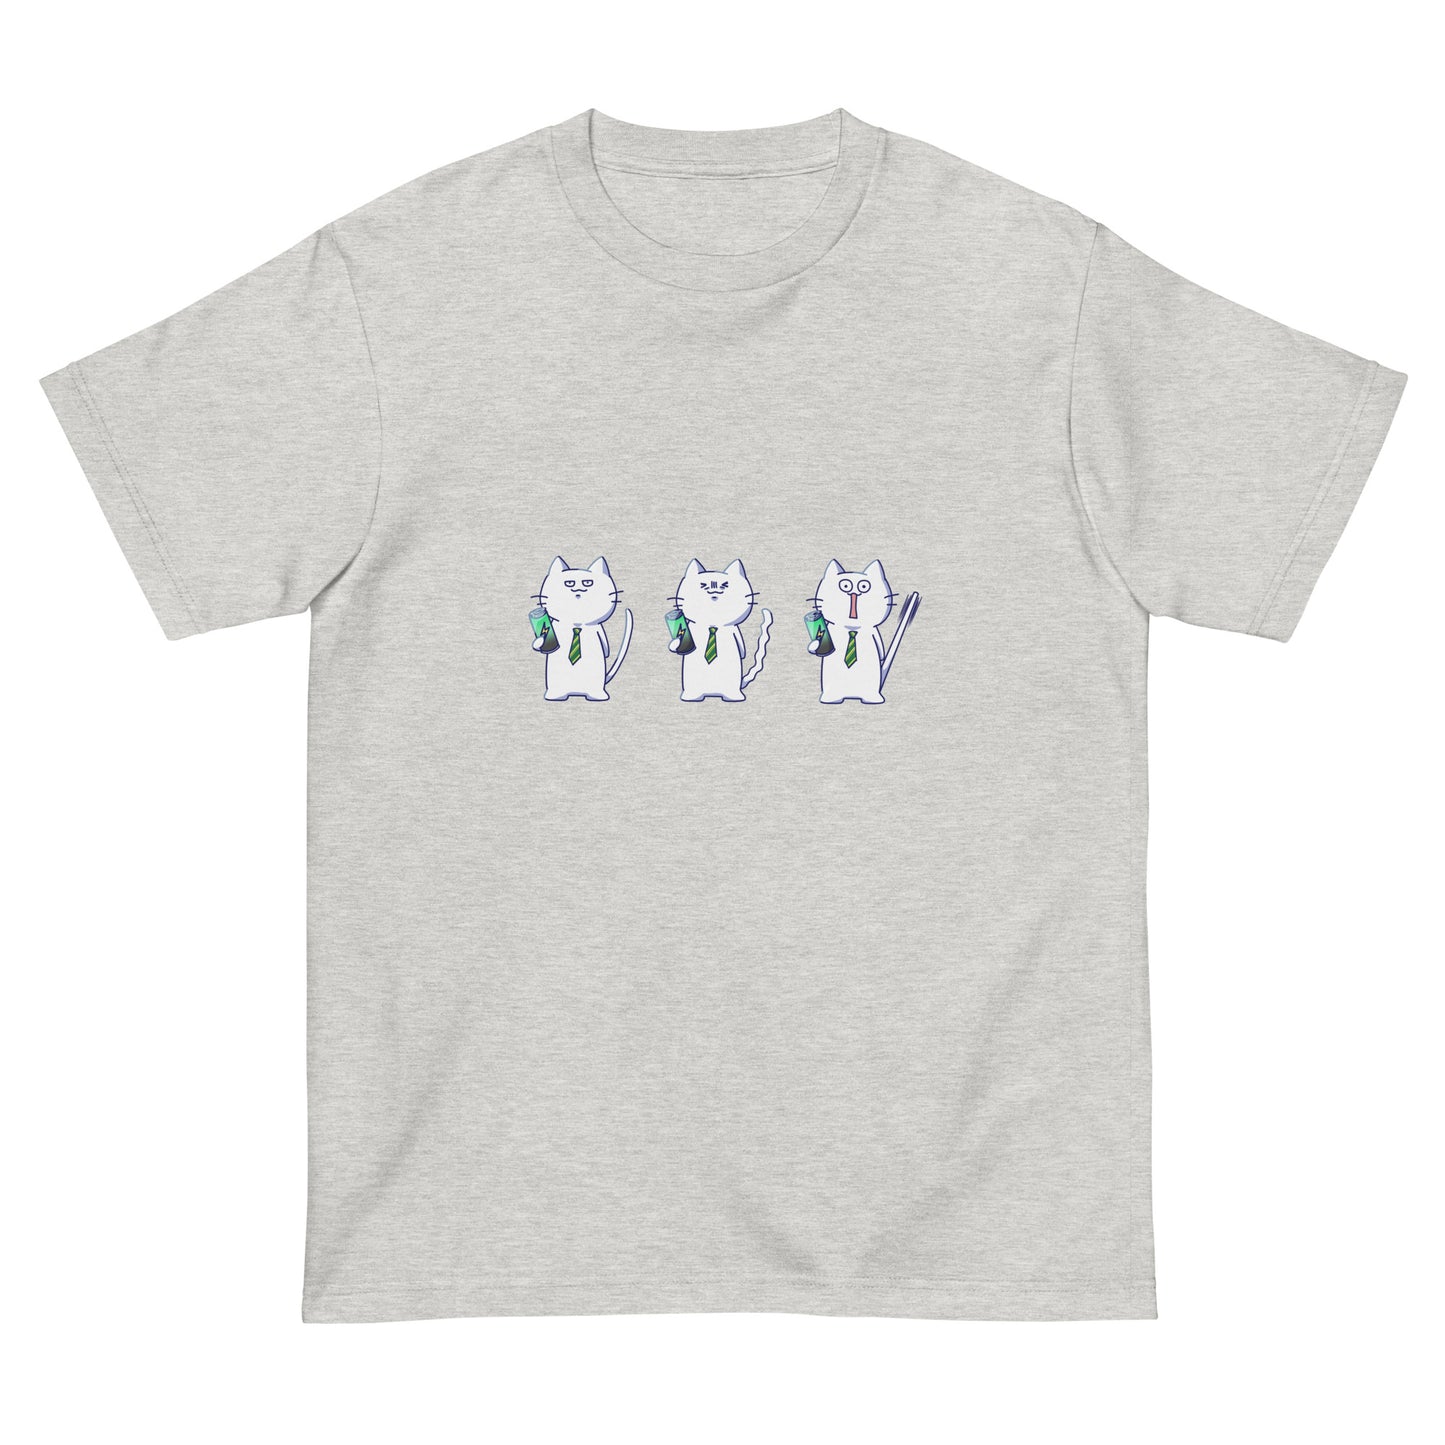 激務猫3連勤Tシャツ